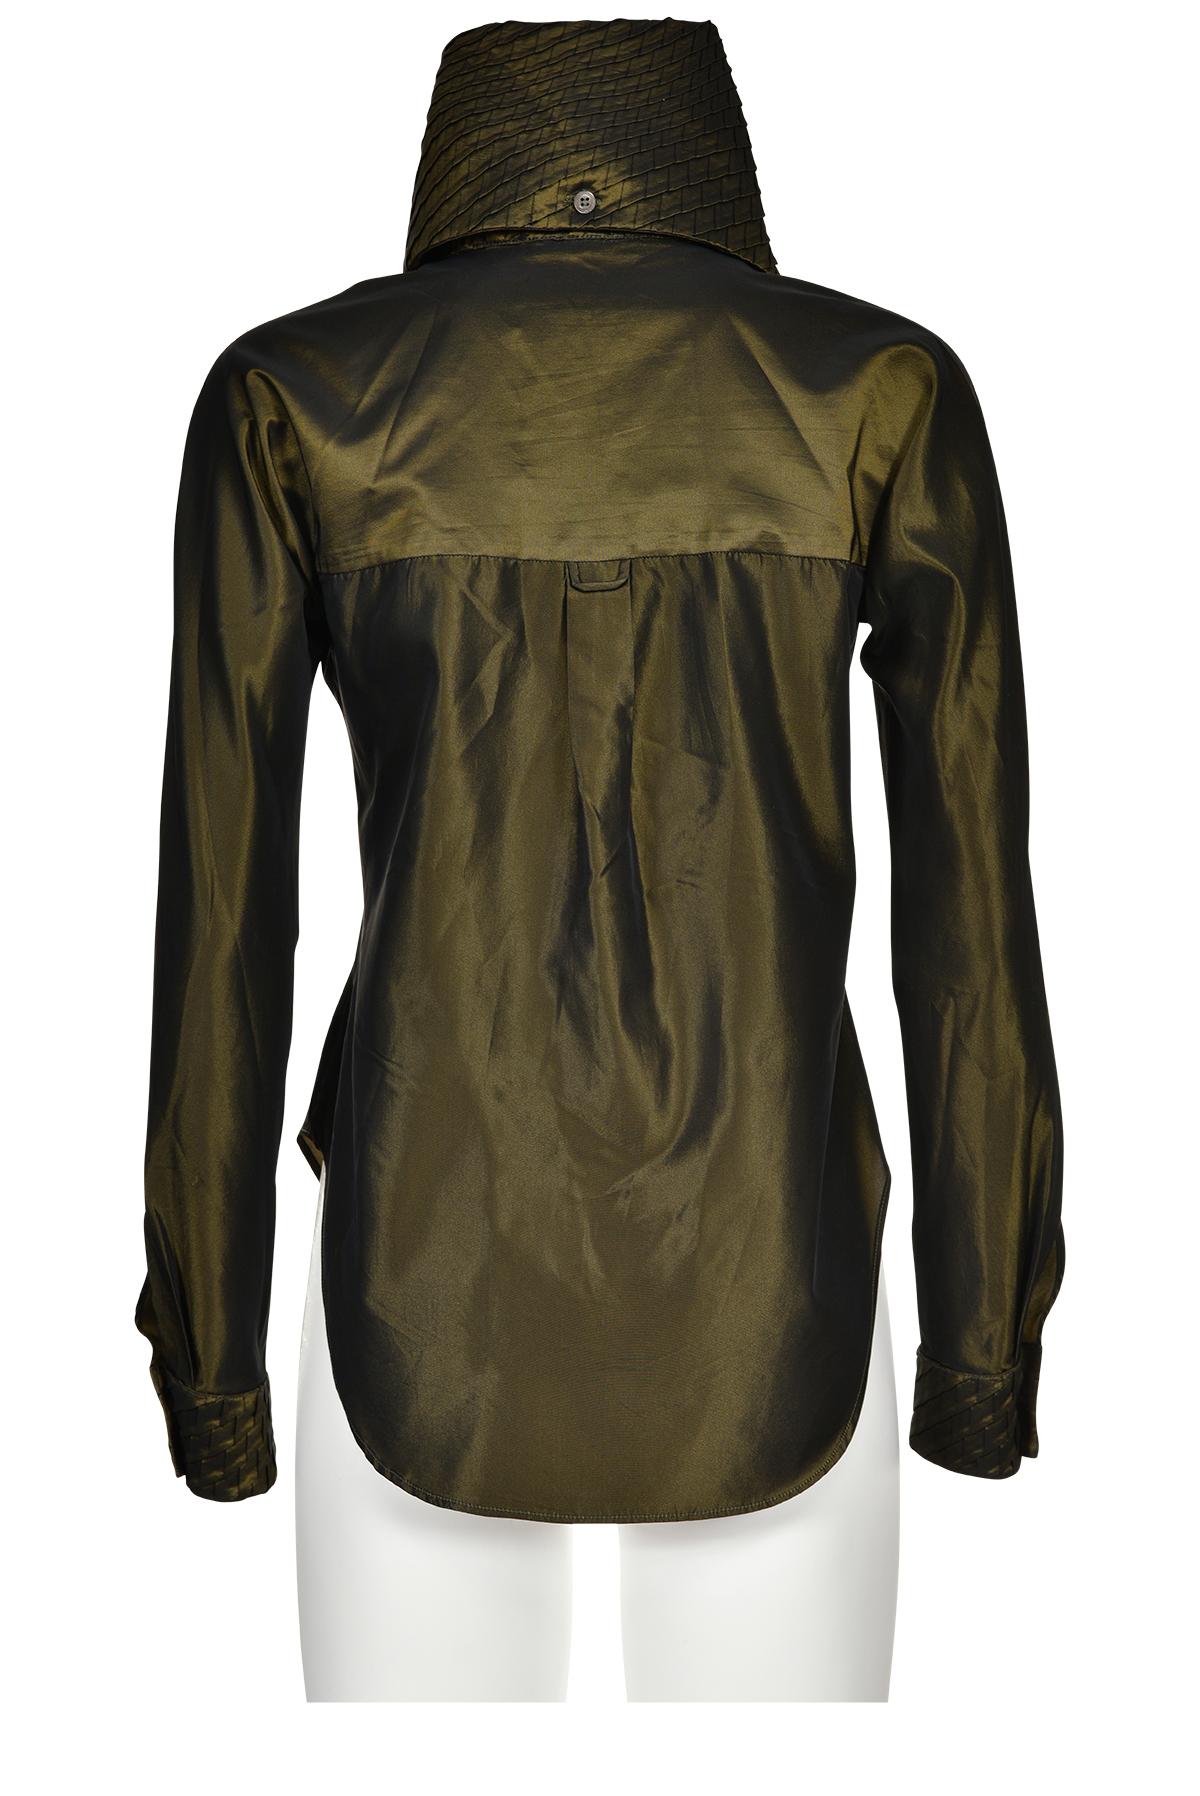 Women's or Men's ALEXANDER MCQUEEN SS 97 Iridescent Taffeta Suit For Sale